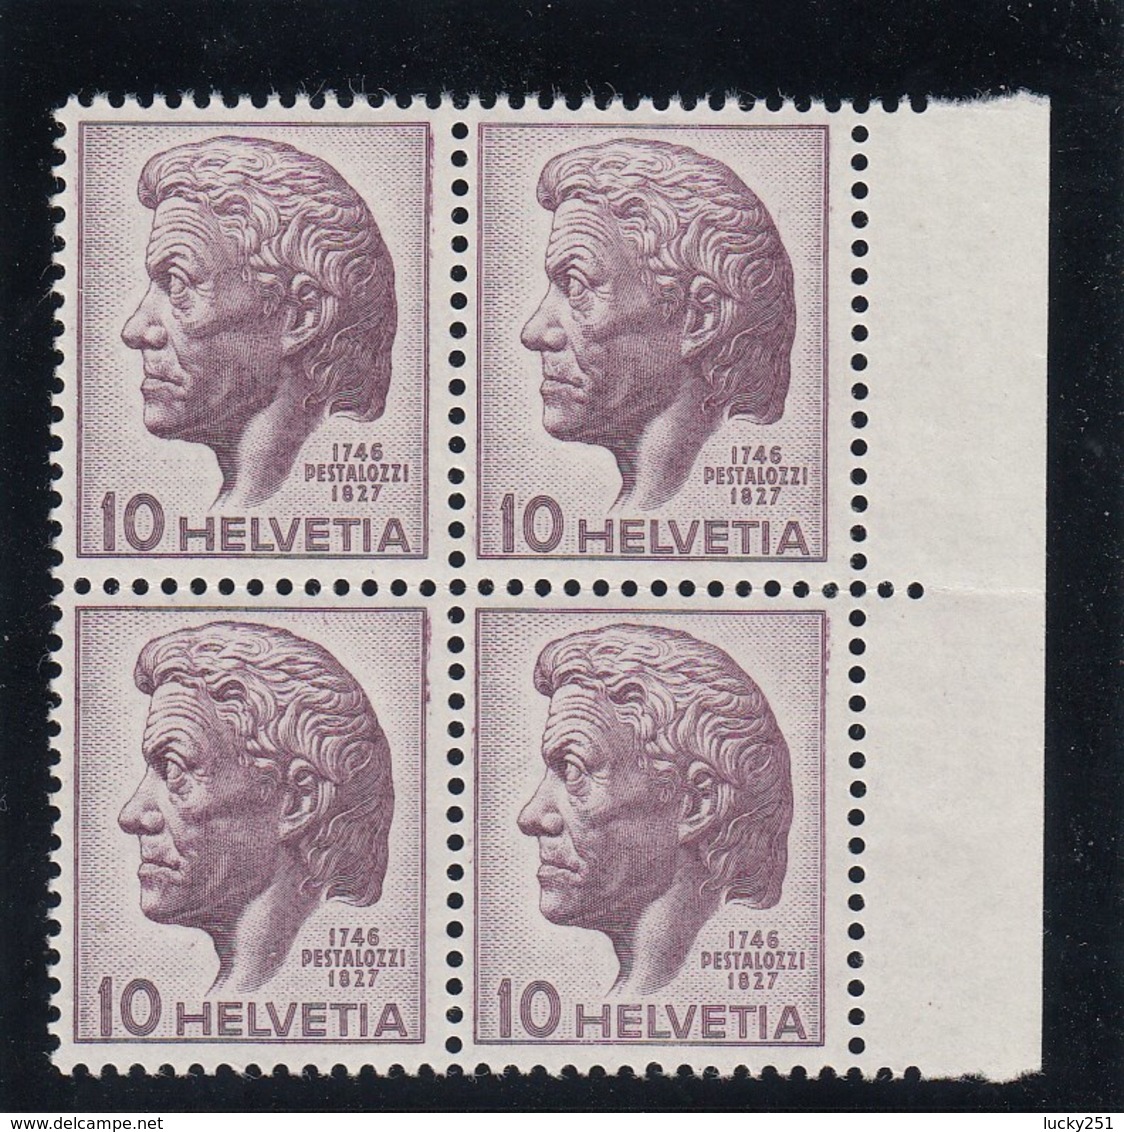 Suisse - 1946 - N° YT 427 - Neuf** - Bloc De Quatre - Henri Pestalozzi - Unused Stamps